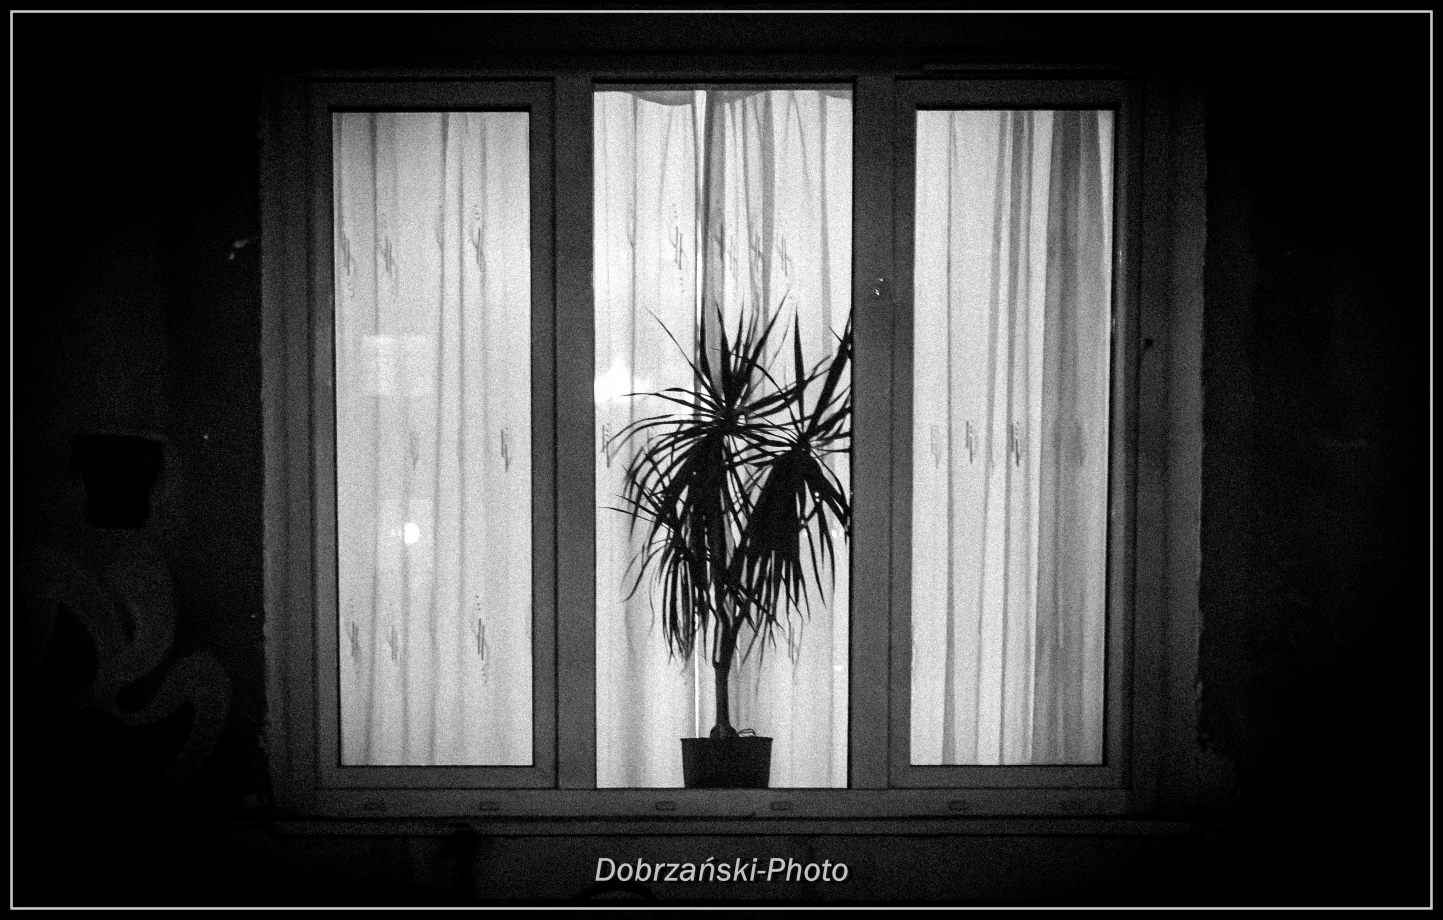 fotograf warszawa dobrzanskiphoto portfolio zdjecia artystyczne fotografia artystyczna 